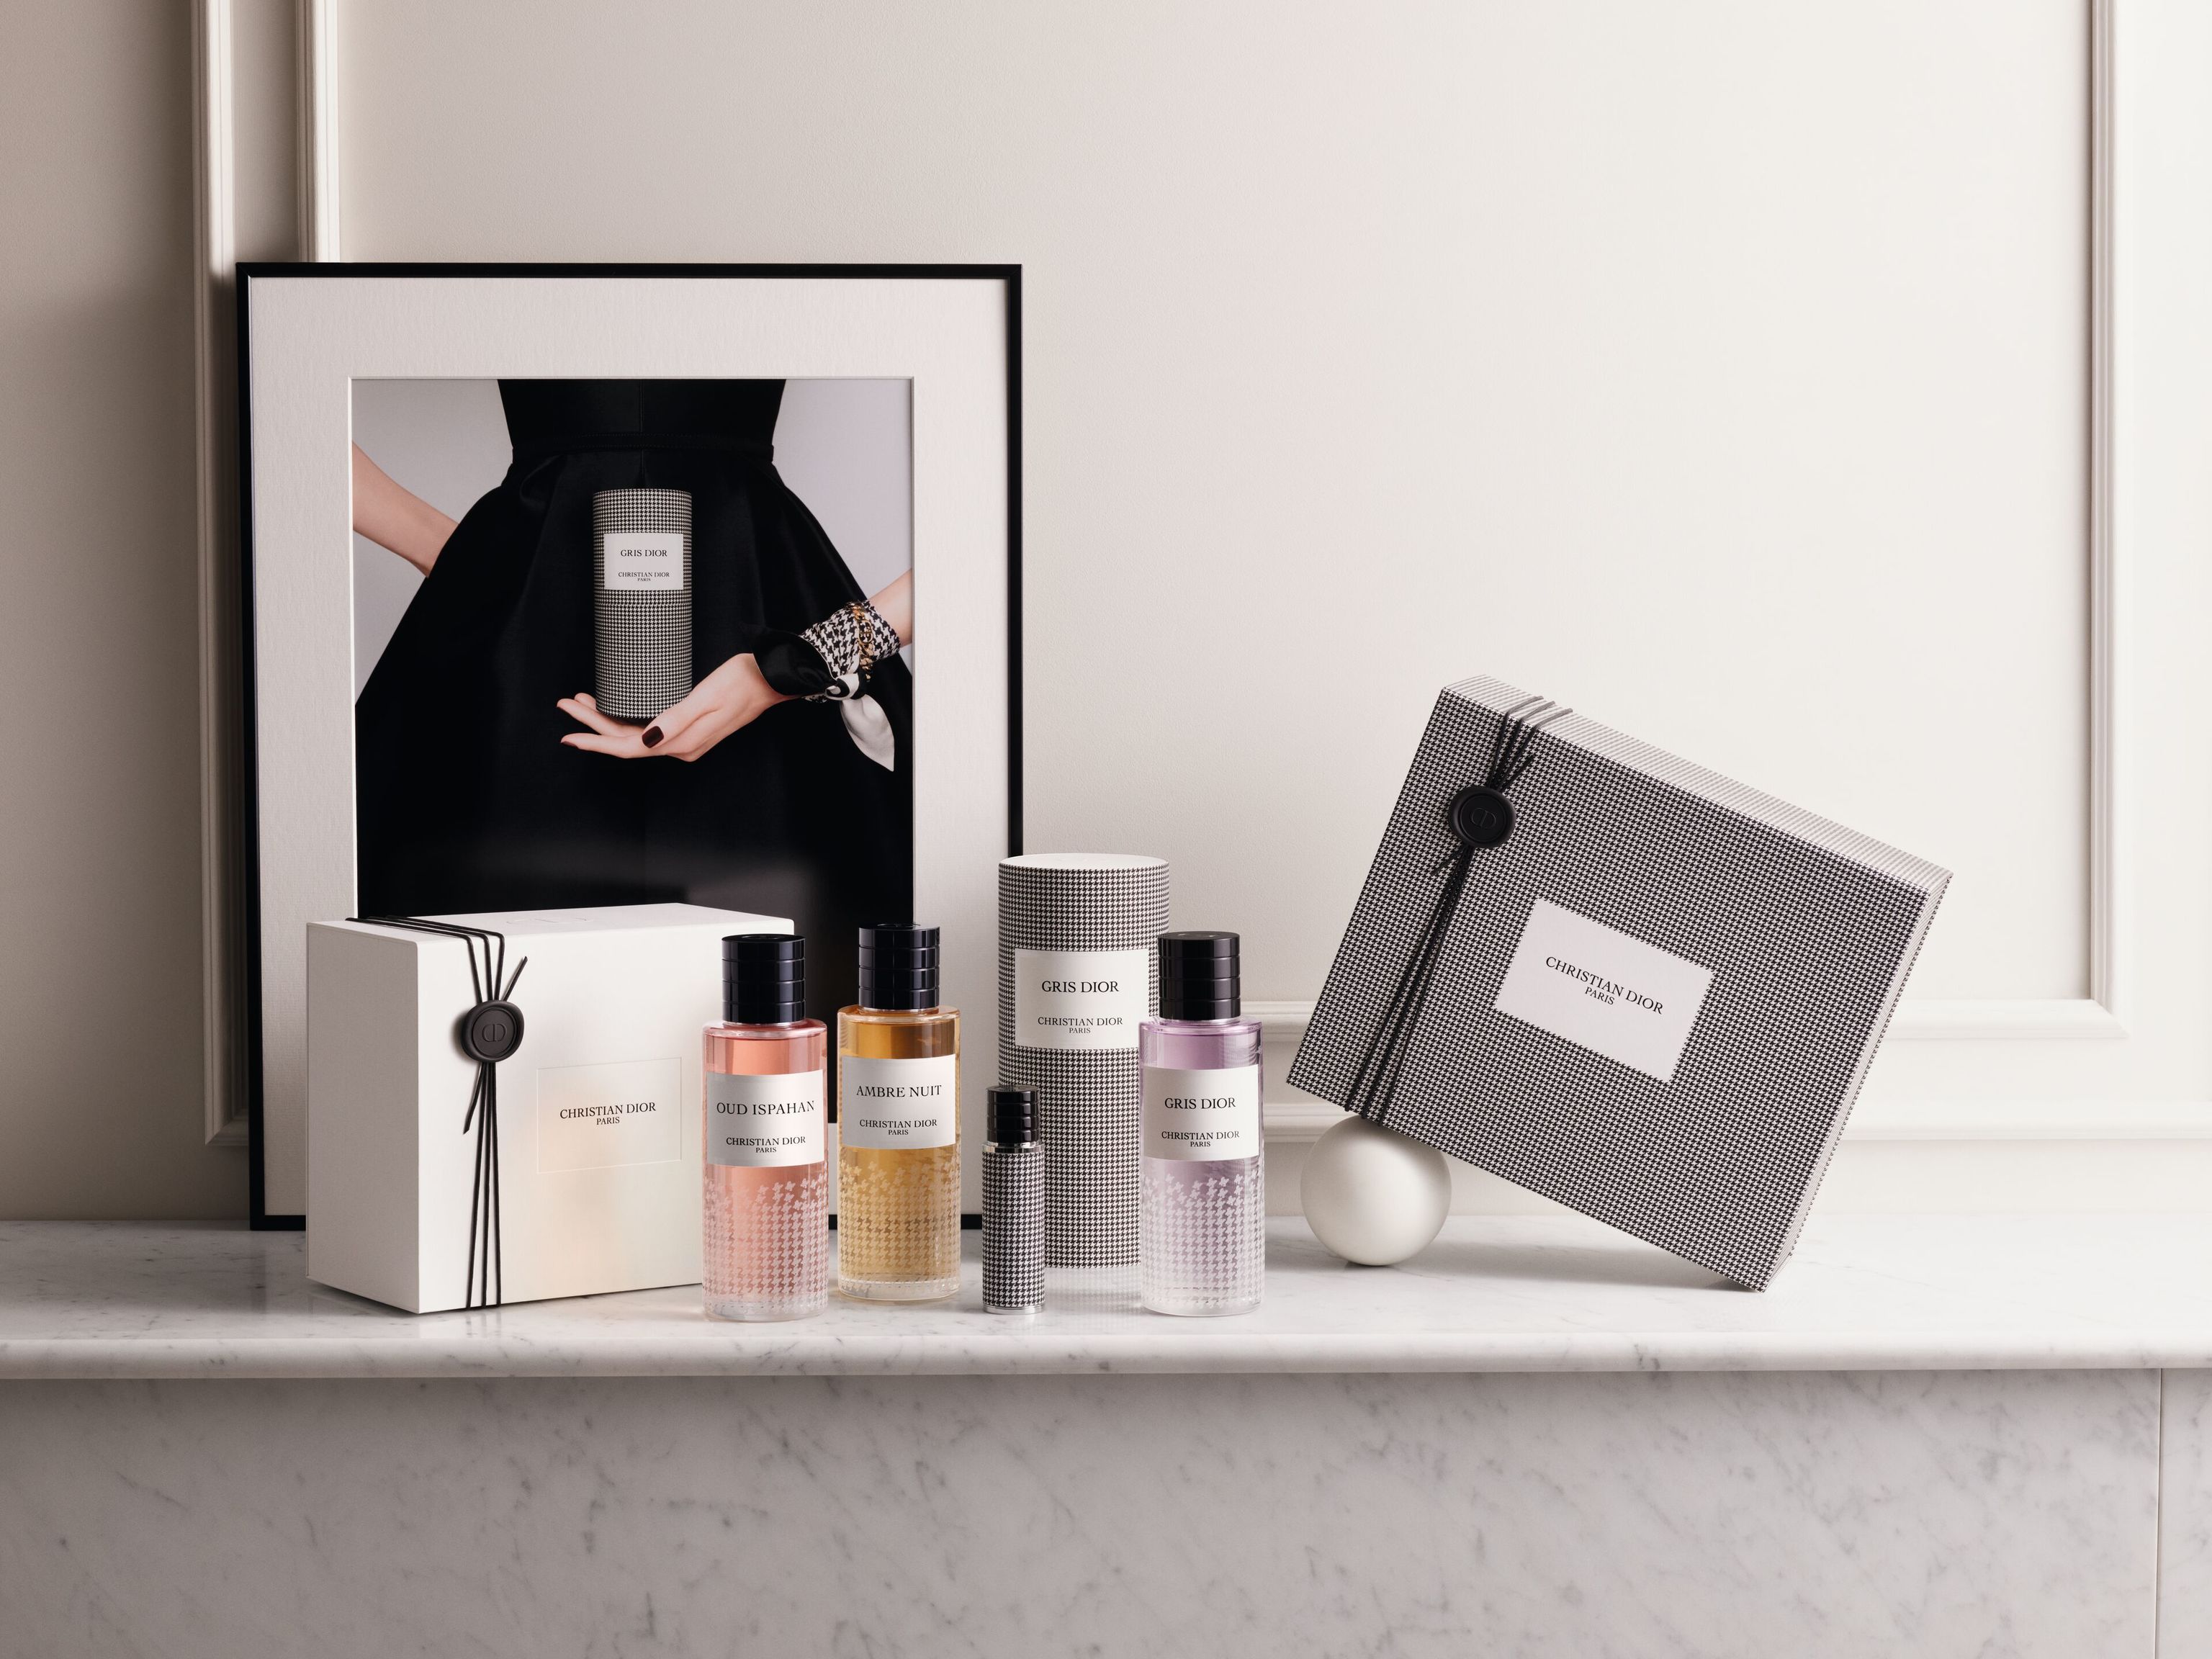 Gris Dior, de la coleccin exclusiva de los perfumes del diseador, una opcin floral con una salida ctrica que se envuelve en un fondo ambarado de musgo. Es la edicin limitada 'New Look' que se vende hasta marzo (desde 220 euros).